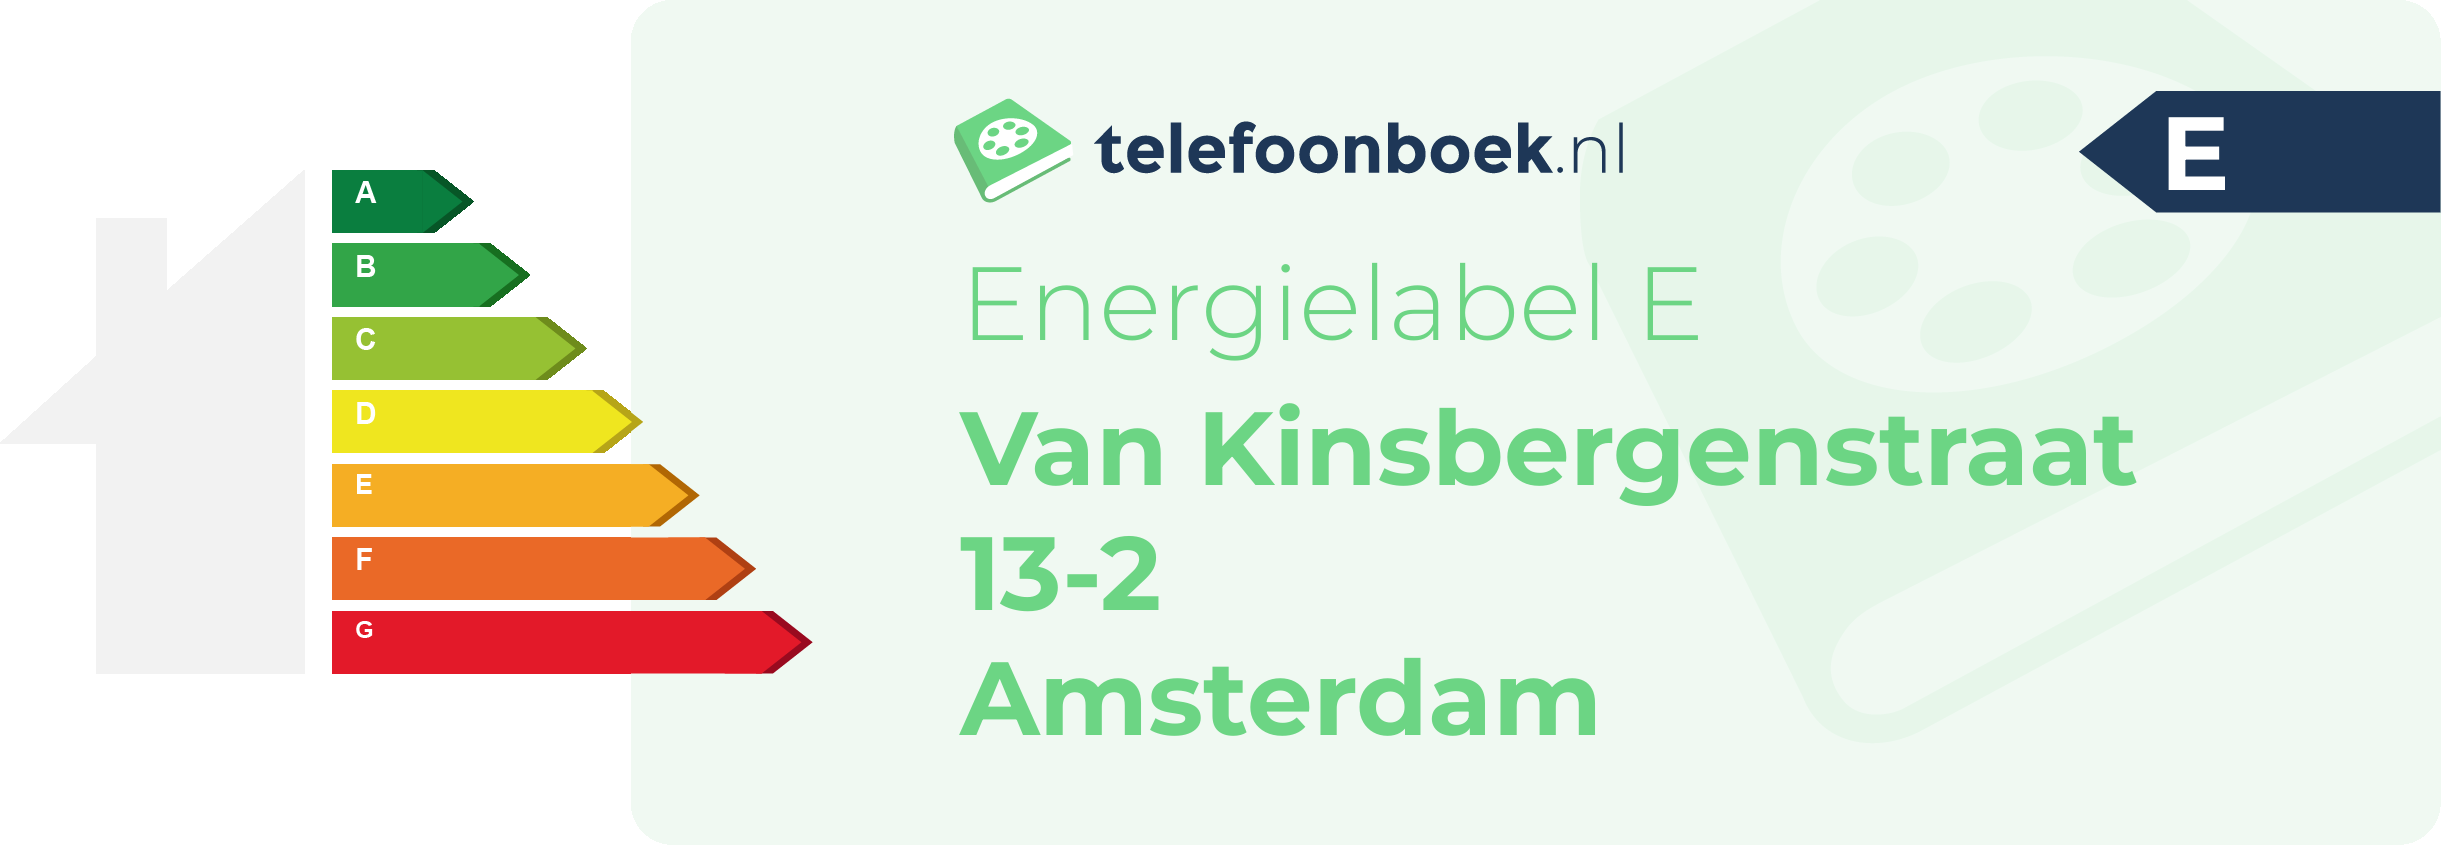 Energielabel Van Kinsbergenstraat 13-2 Amsterdam